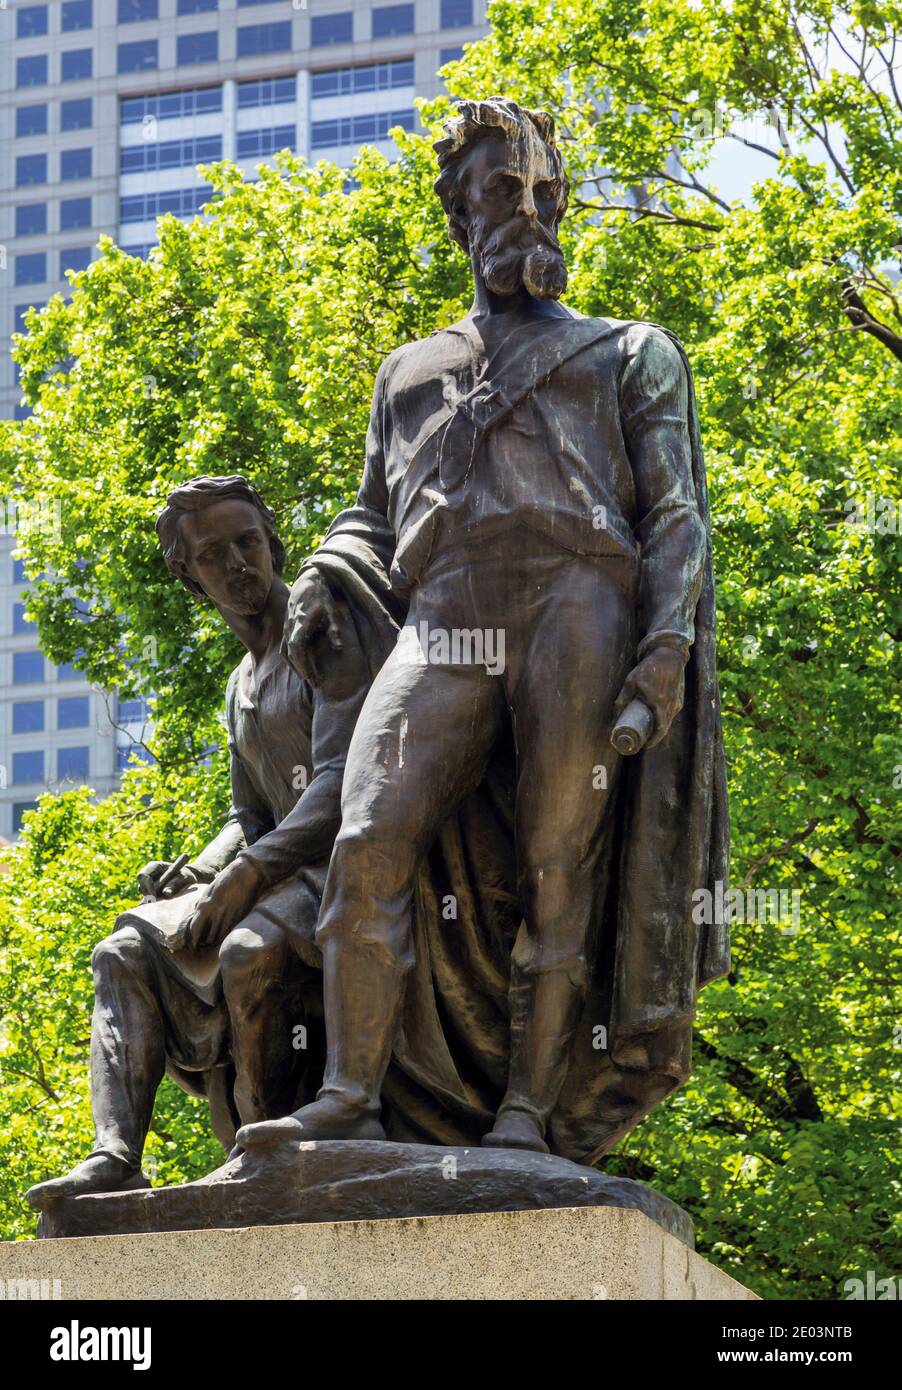 Monumento agli esploratori Burke e Wills, Melbourne, Victoria, Australia. I due uomini Robert o`Hara Burke, in piedi, e William John Wills, seduto, wer Foto Stock